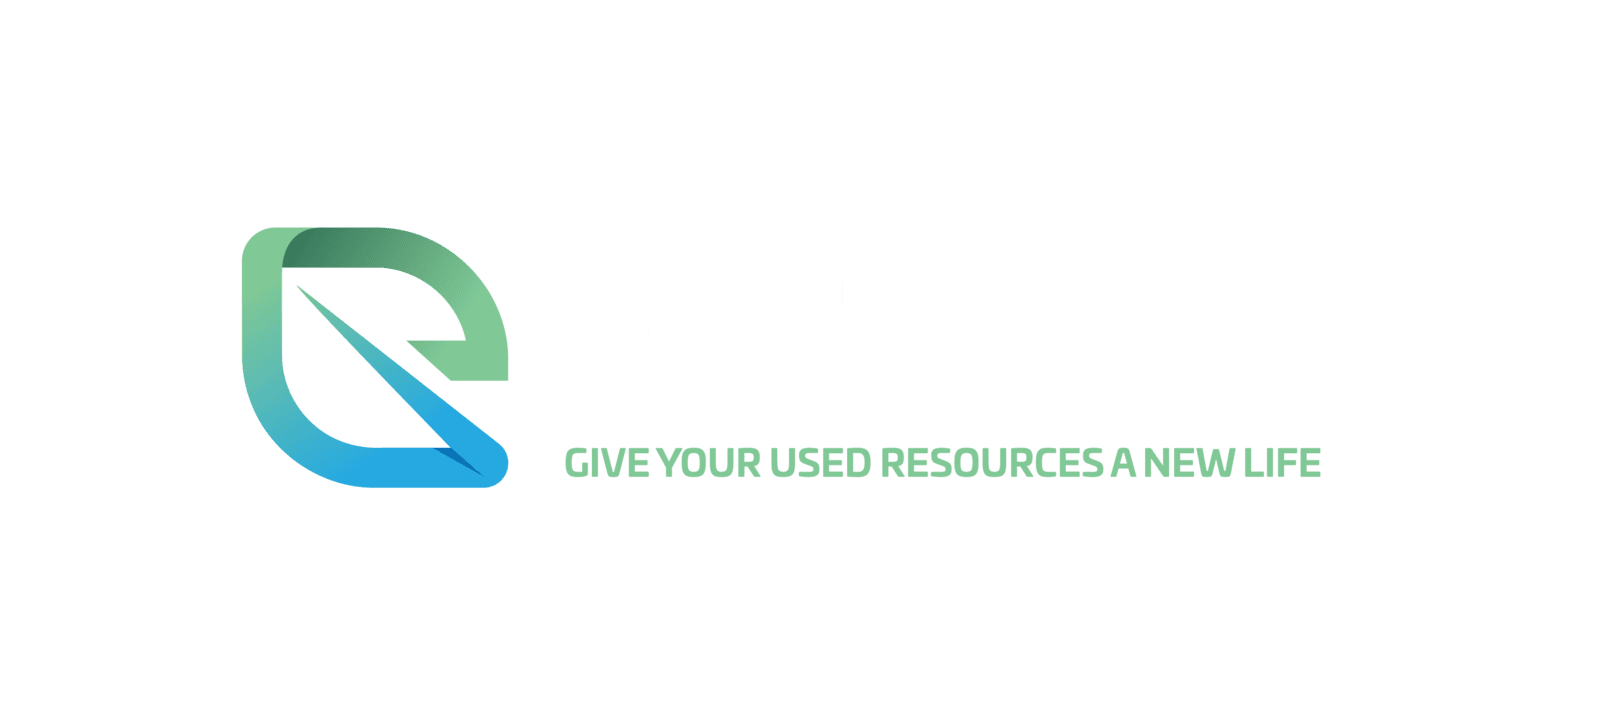 Ehfaaz-Impact Report